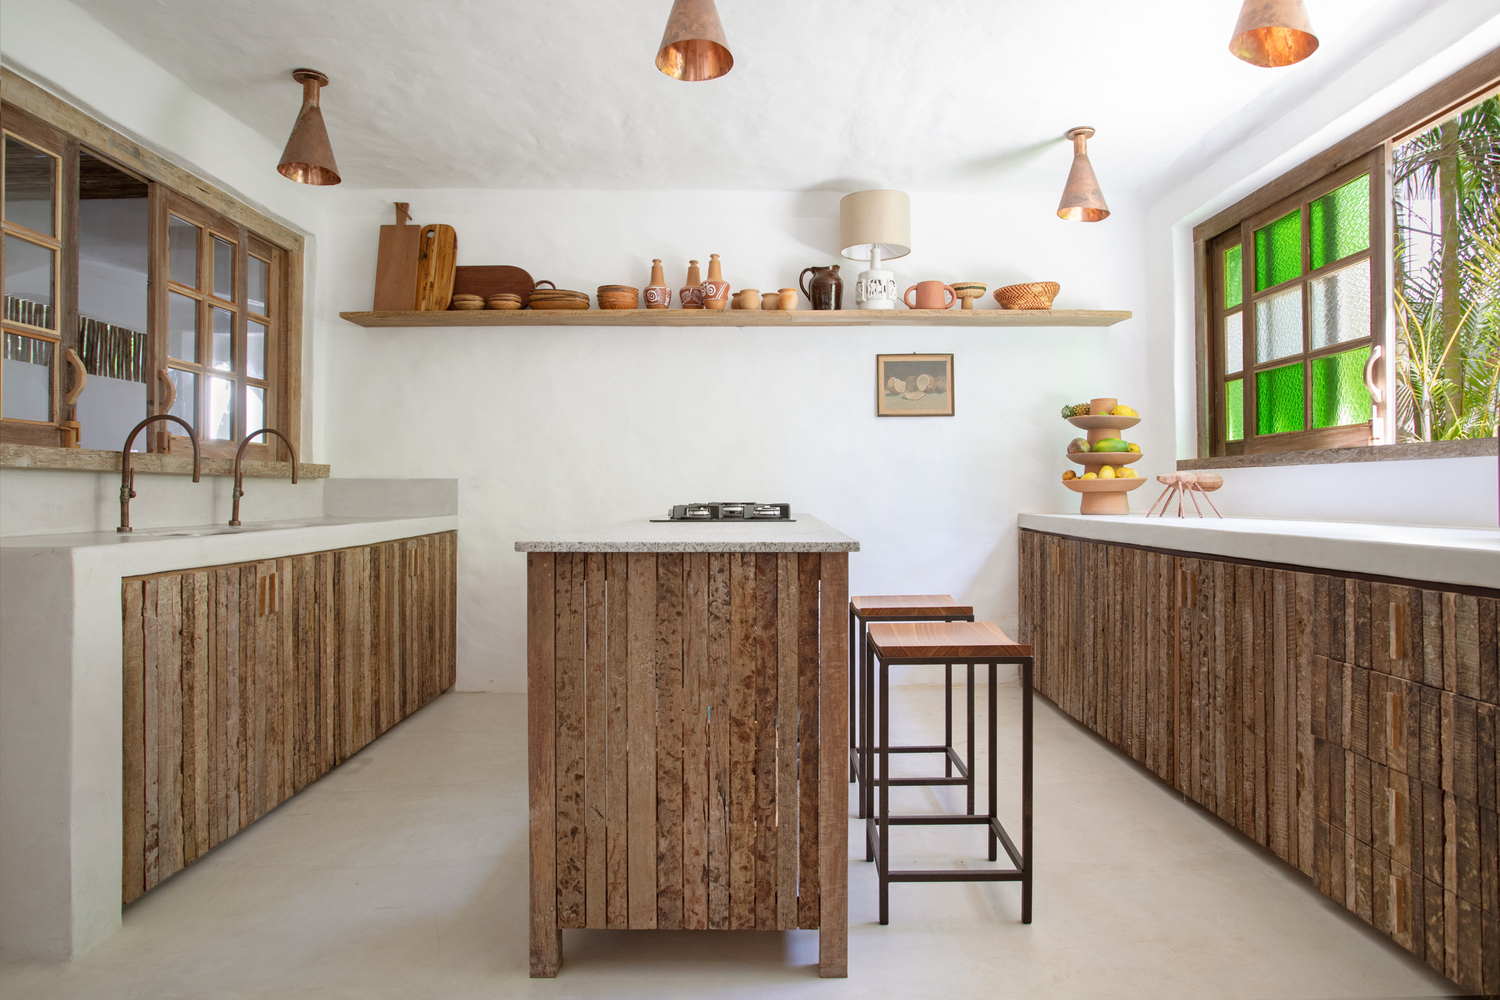 Trong nhà bếp, việc lắp đặt một đảo bếp đã tối ưu hóa không gian và giúp nhân rộng khu vực làm việc và ăn uống. Những ô cửa sổ duyên dáng với kính màu xanh lá chuối. 